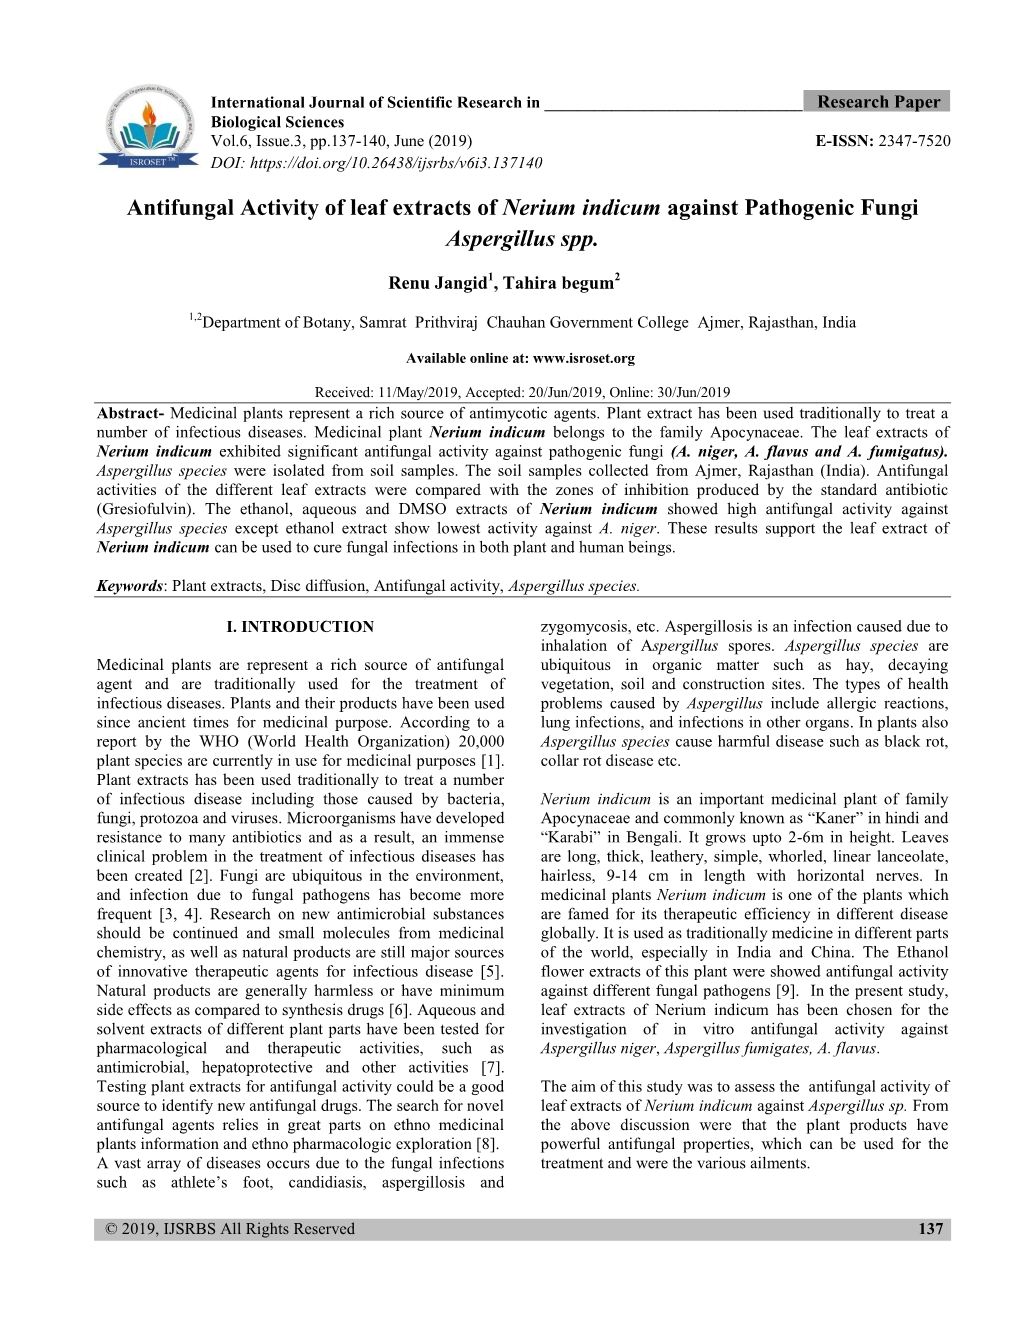 Antifungal Activity of Leaf Extracts of Nerium Indicum Against Pathogenic Fungi Aspergillus Spp